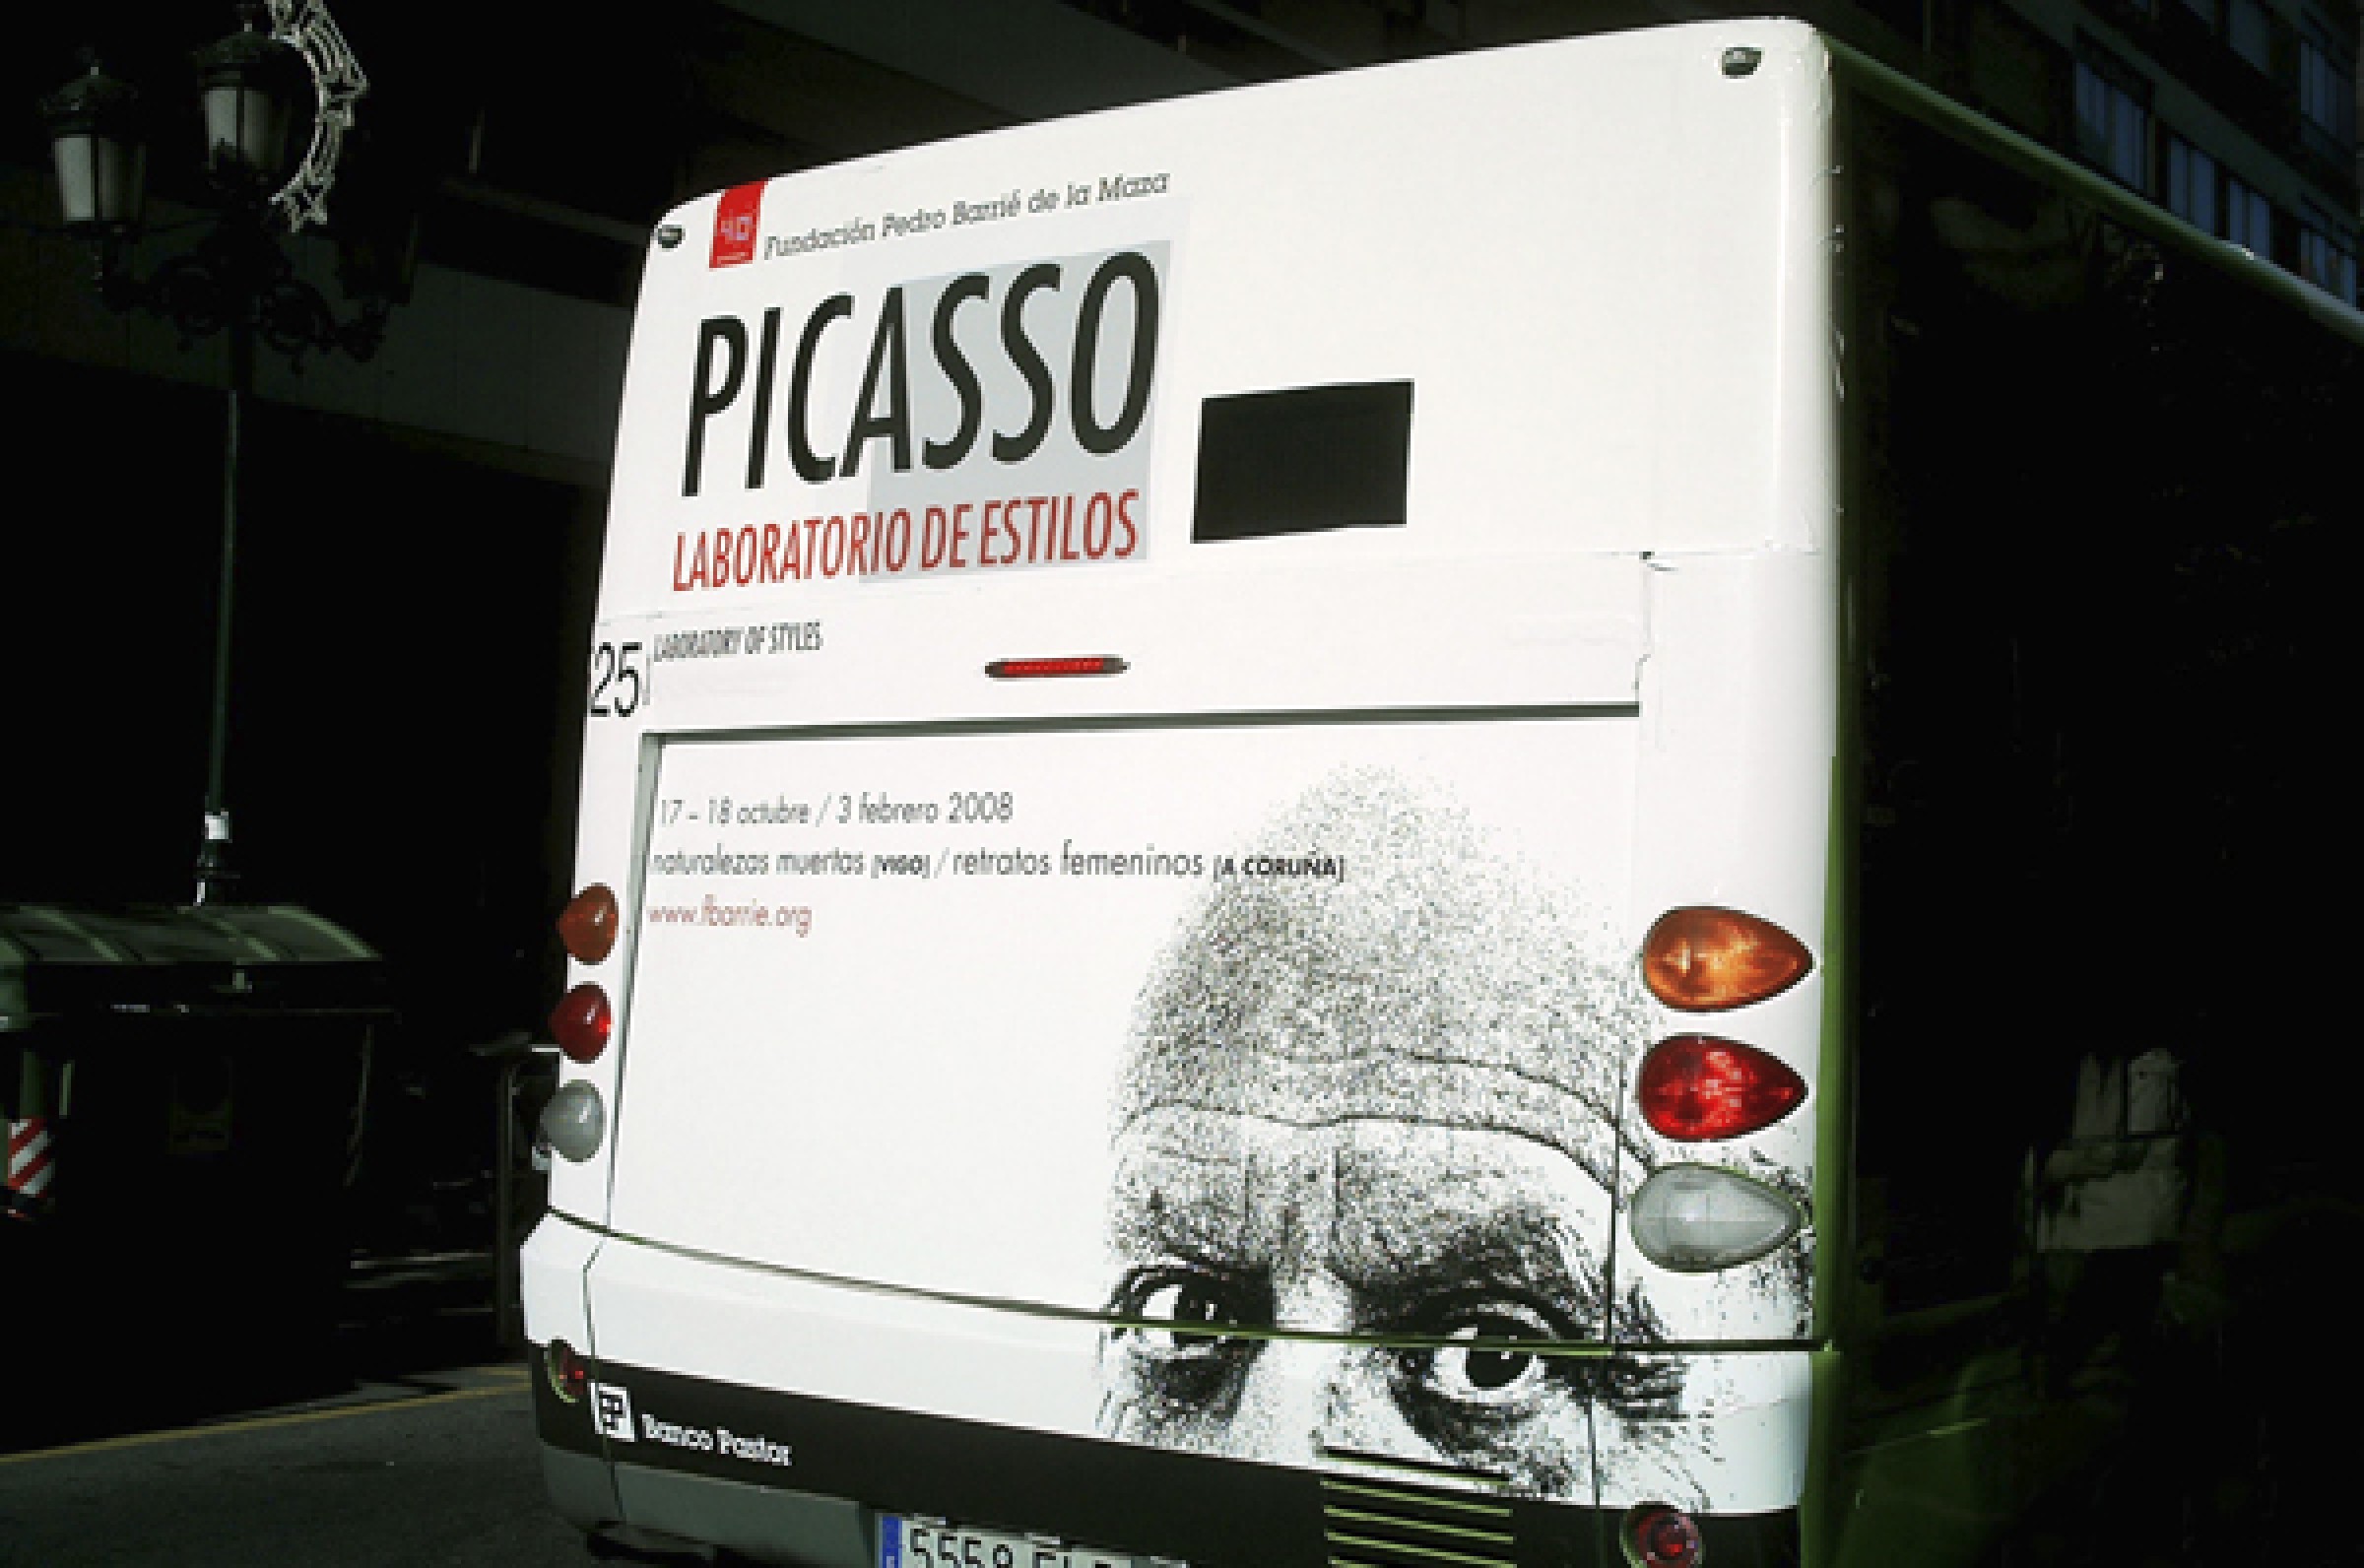 Picasso. Laboratorio de estilos